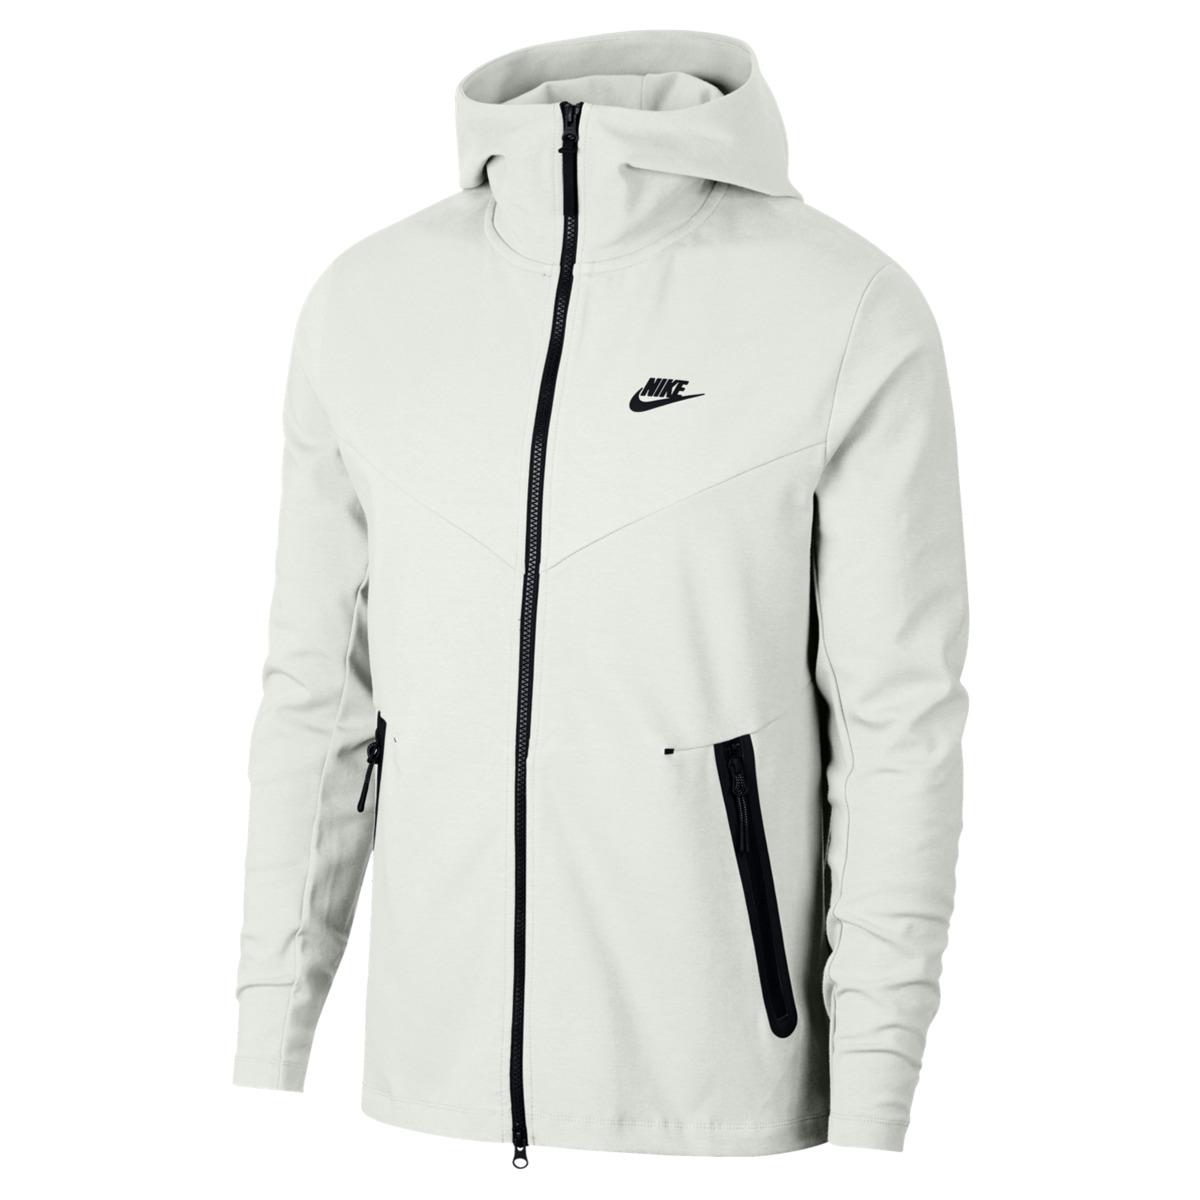 Nike Cotton Sportswear Sweatshirt in White for Men - Lyst